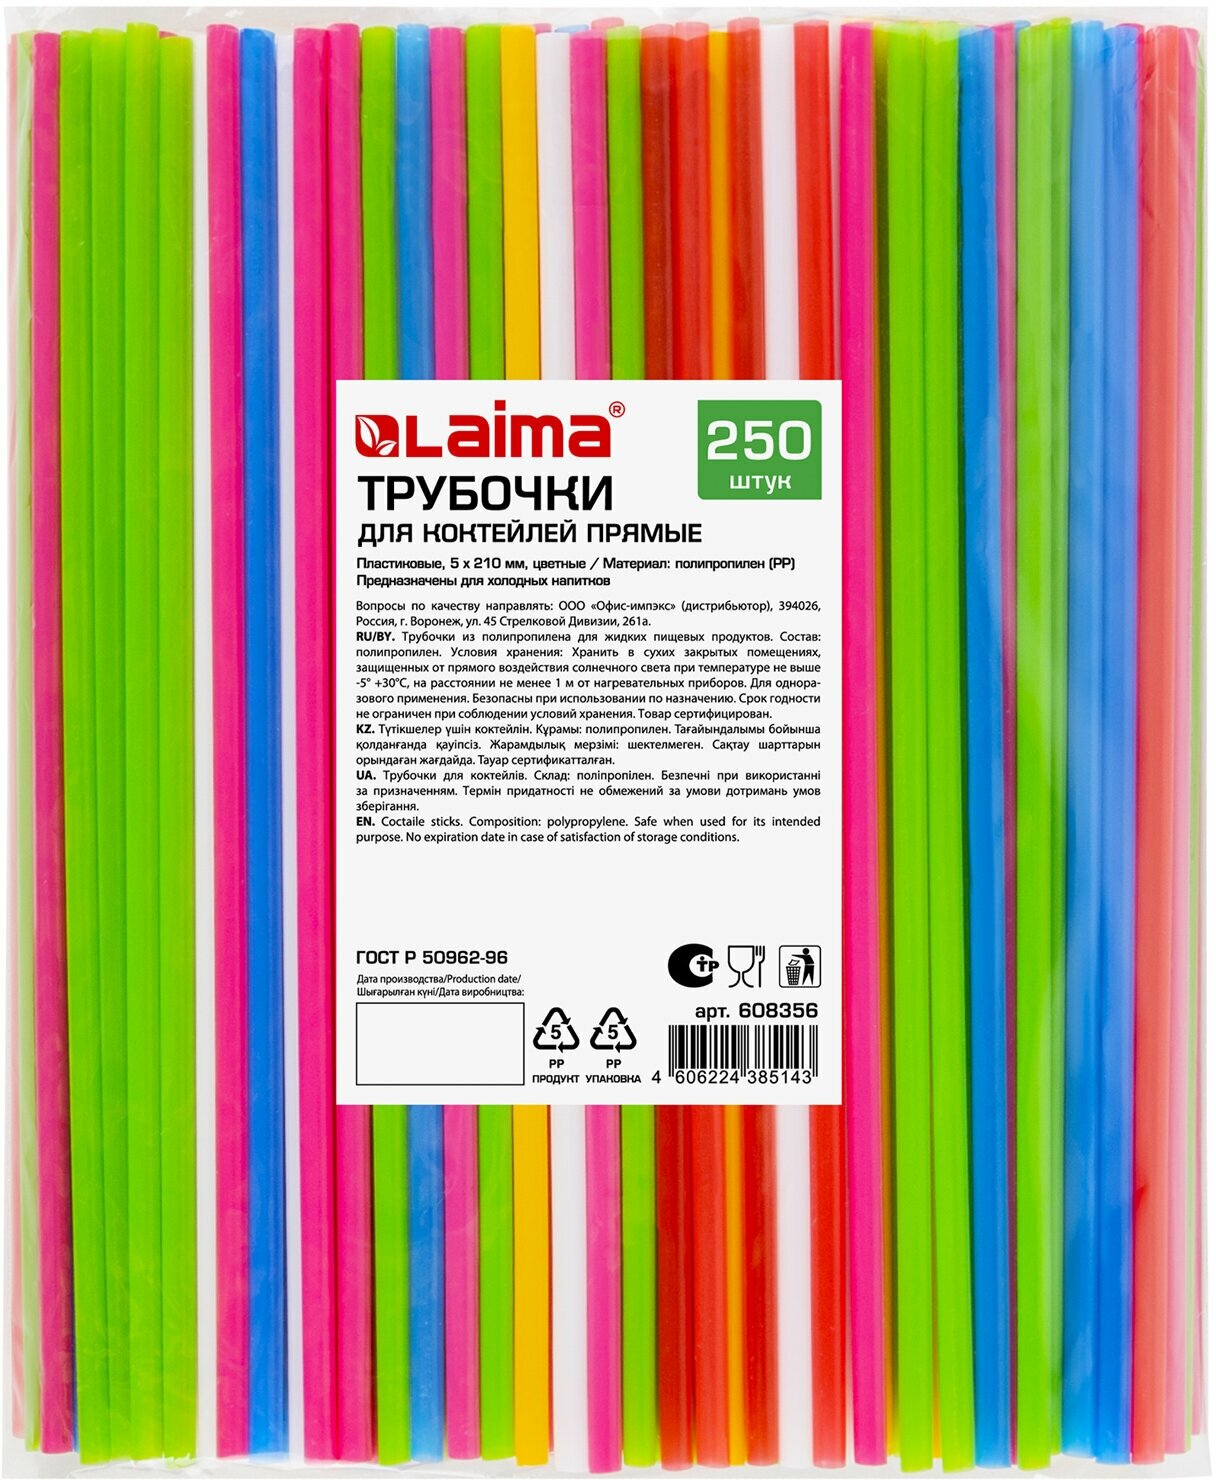 Трубочки для коктейлей LAIMA прямые, пластиковые, 5х210 мм, цветные, комплект 250 шт